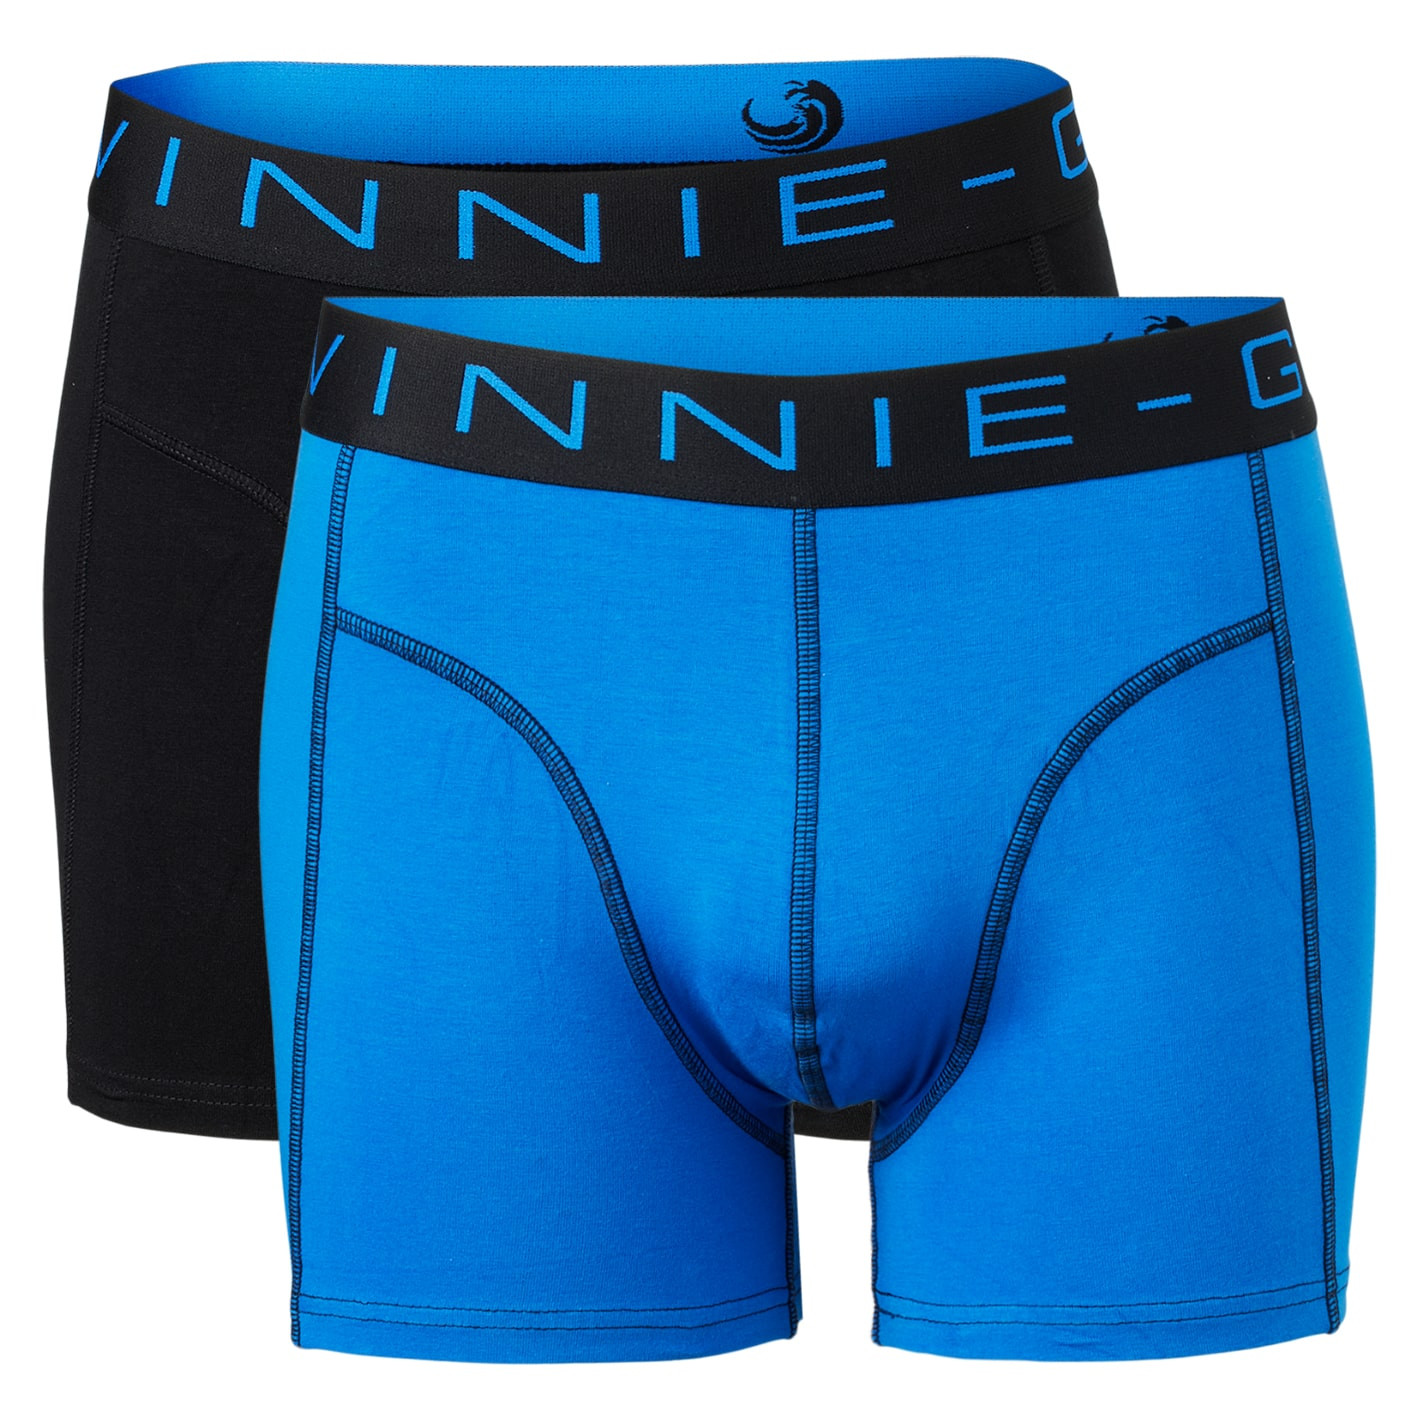 Vinnie-G Boxershorts 2-pack Black / Blue-M